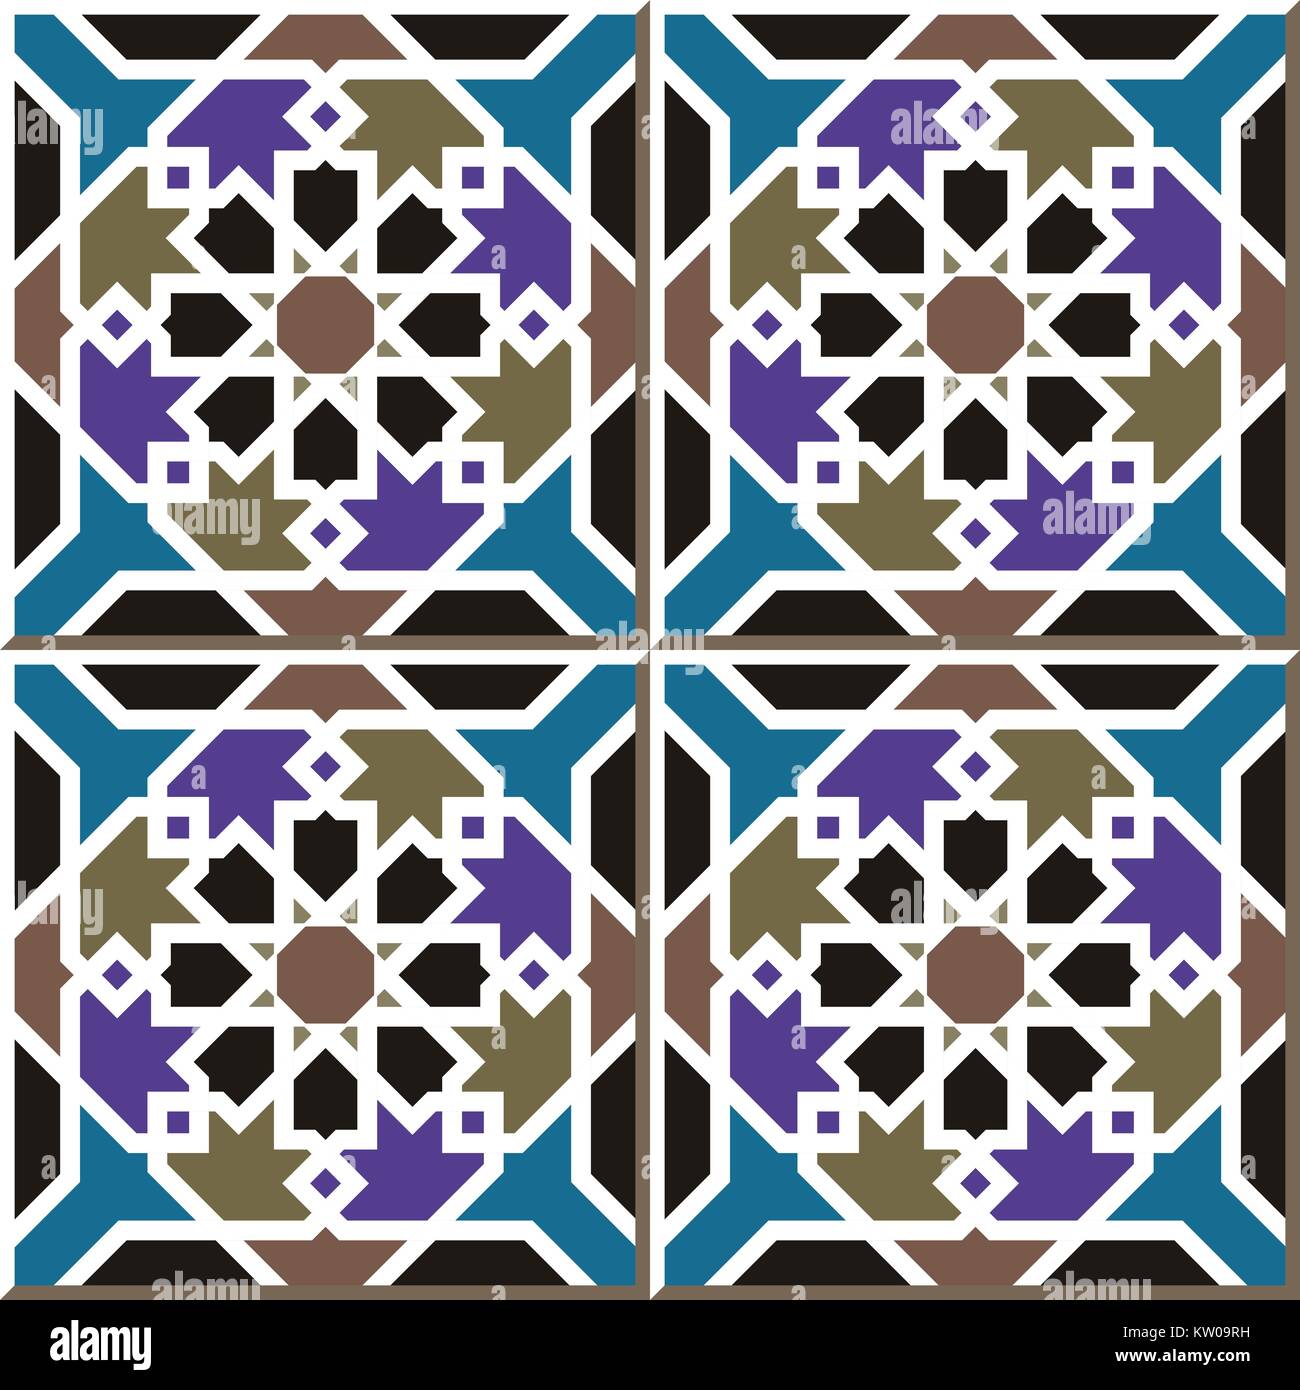 Ceramic tile pattern of Islamic star cross frame Stock Vector Image & Art -  Alamy